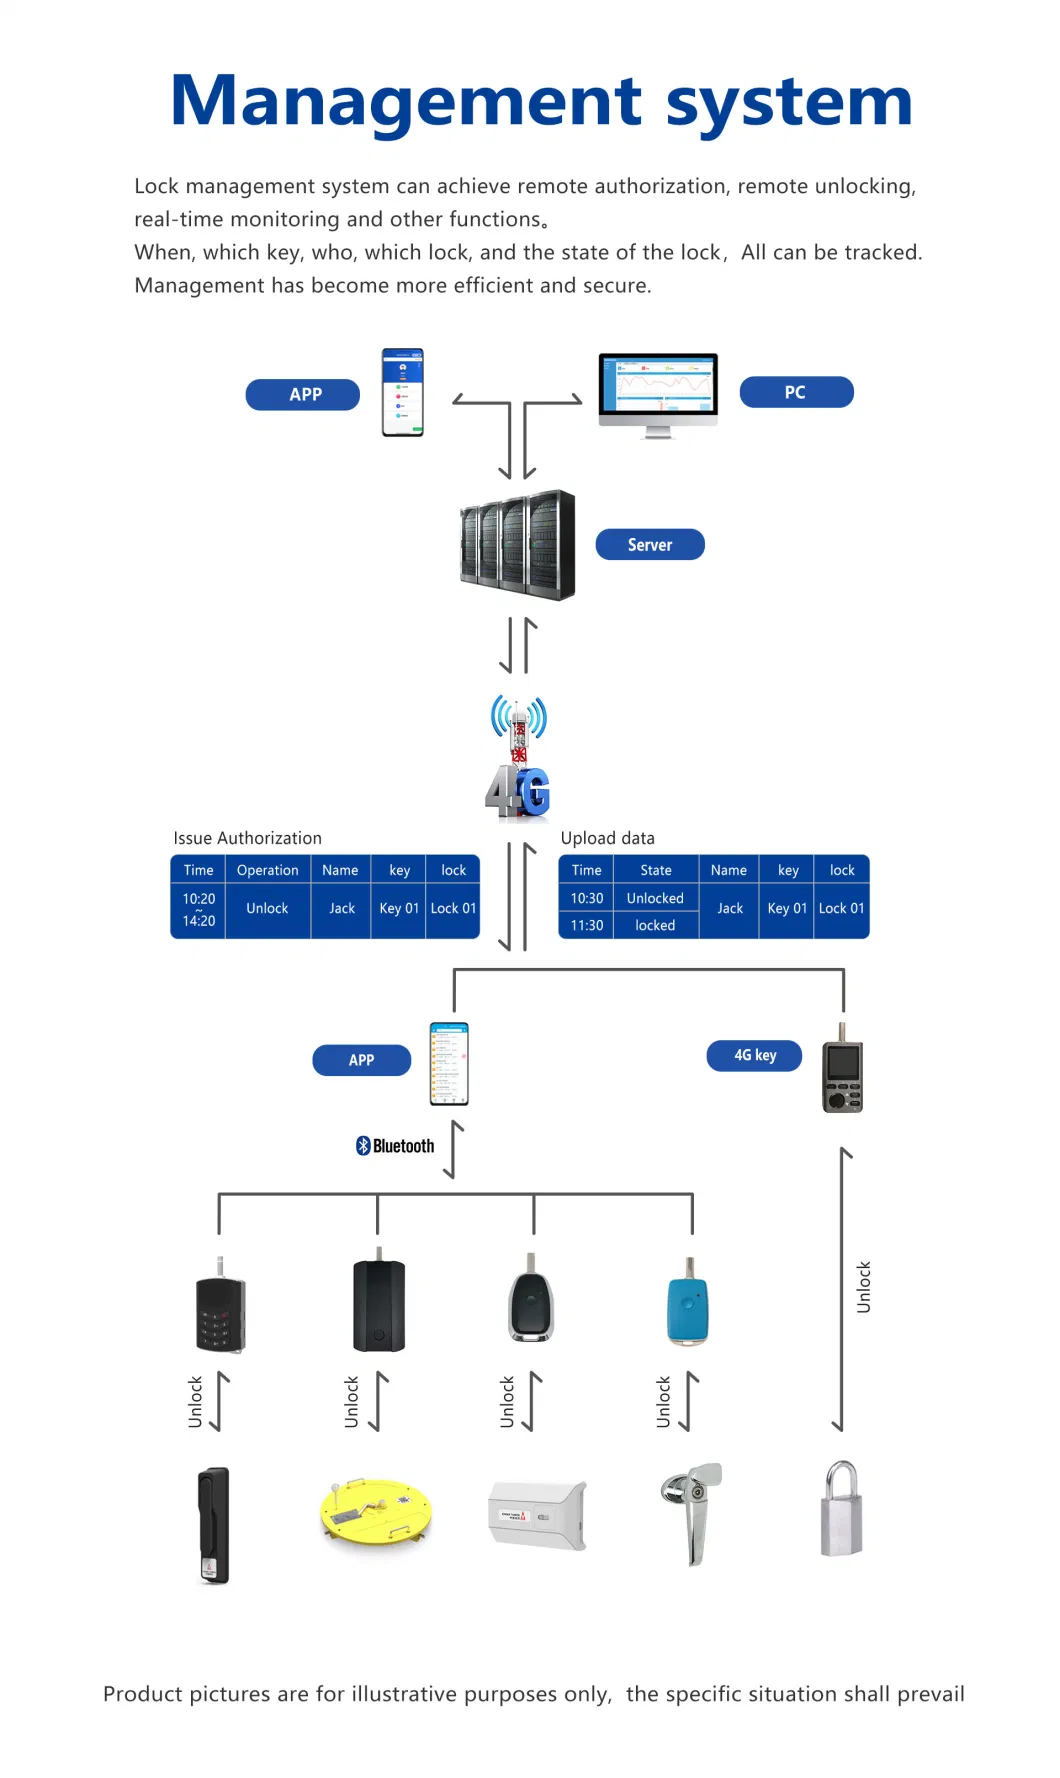 Aggiorna IP67 Data ricaricabile Trasferimento Luce vocale Prompt Bluetooth Urgent Power Alimentazione Chiave Gestione Sistema Chiave autorizzata da Control Plantformform